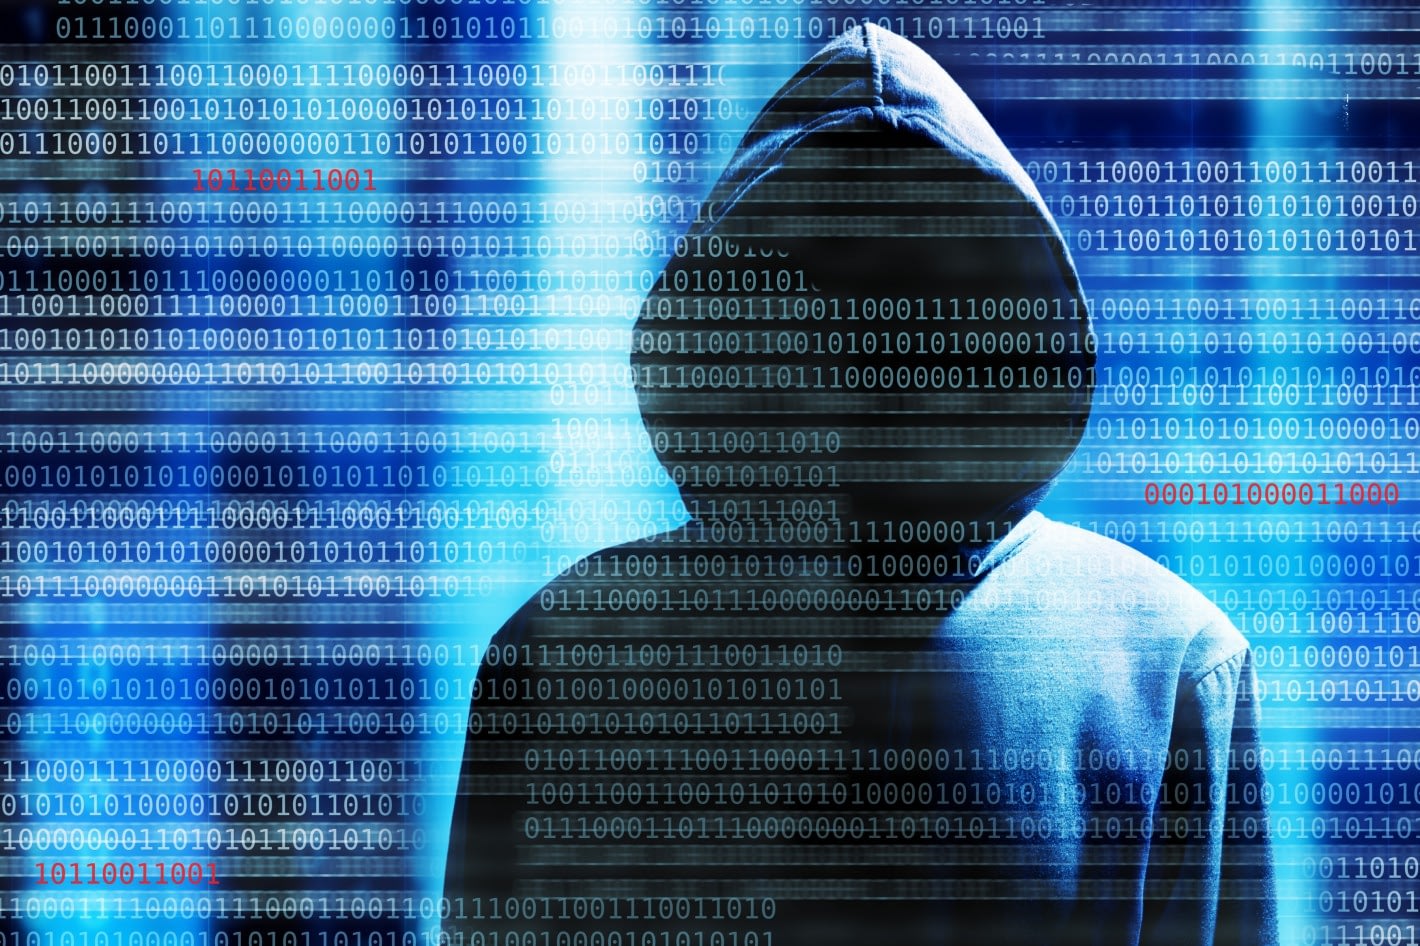 Protección de nuestros datos ante hackeos masivos